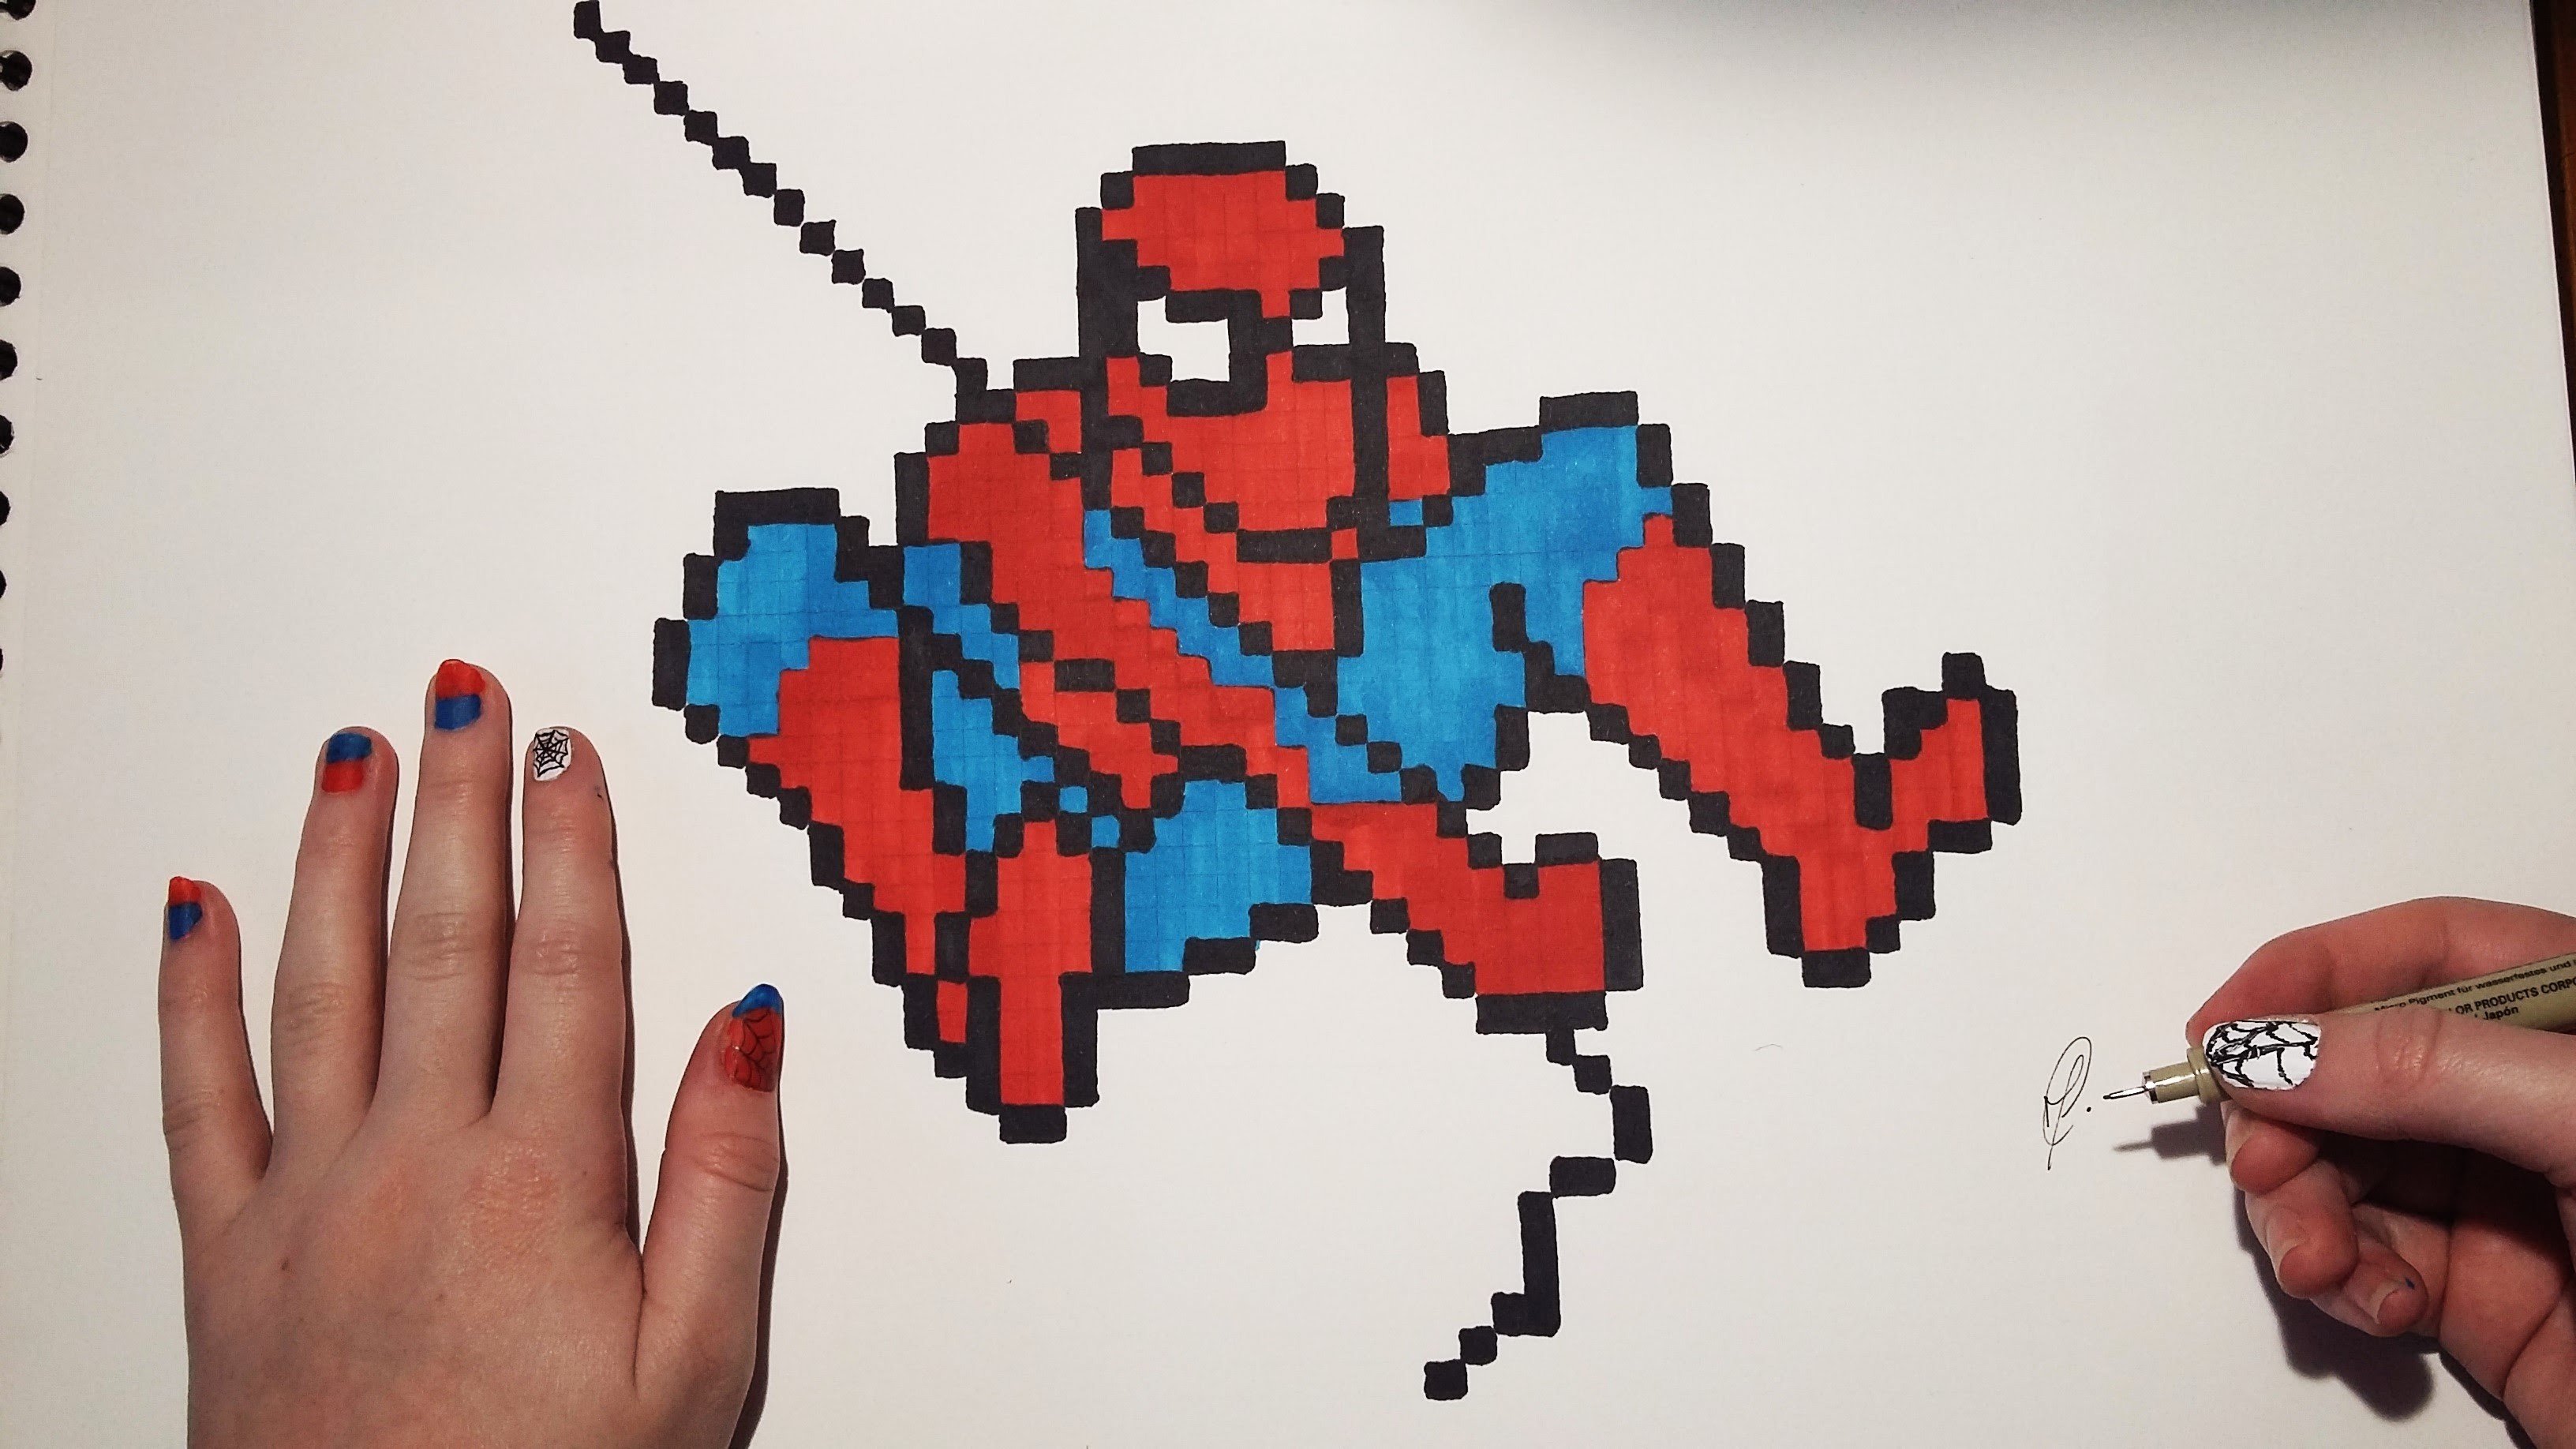 Человек паук пиксель арт - картинки, фото и рисунки.